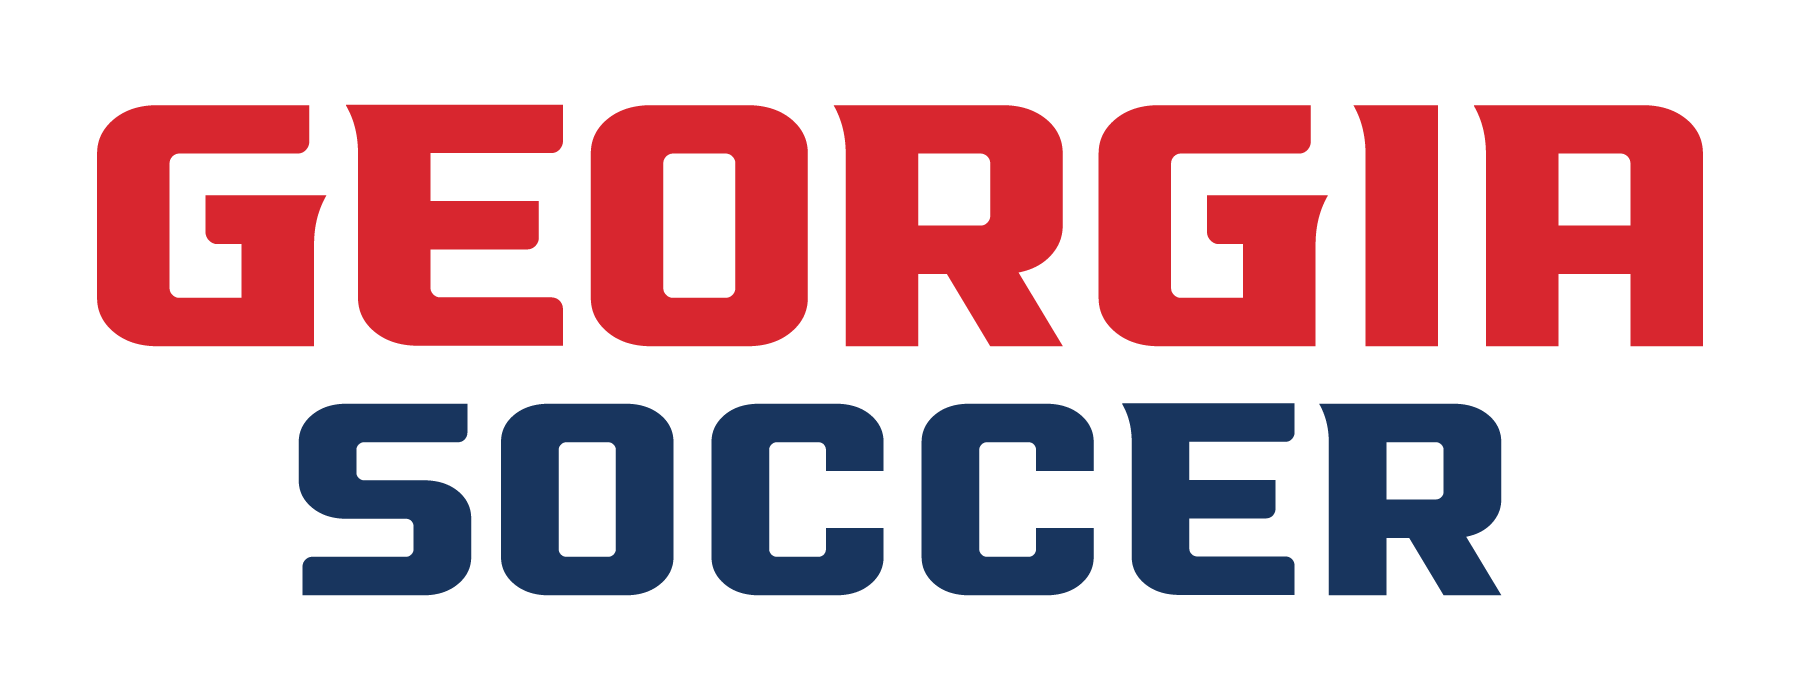 Georgia Soccer Leagues Explained - Georgia Soccer